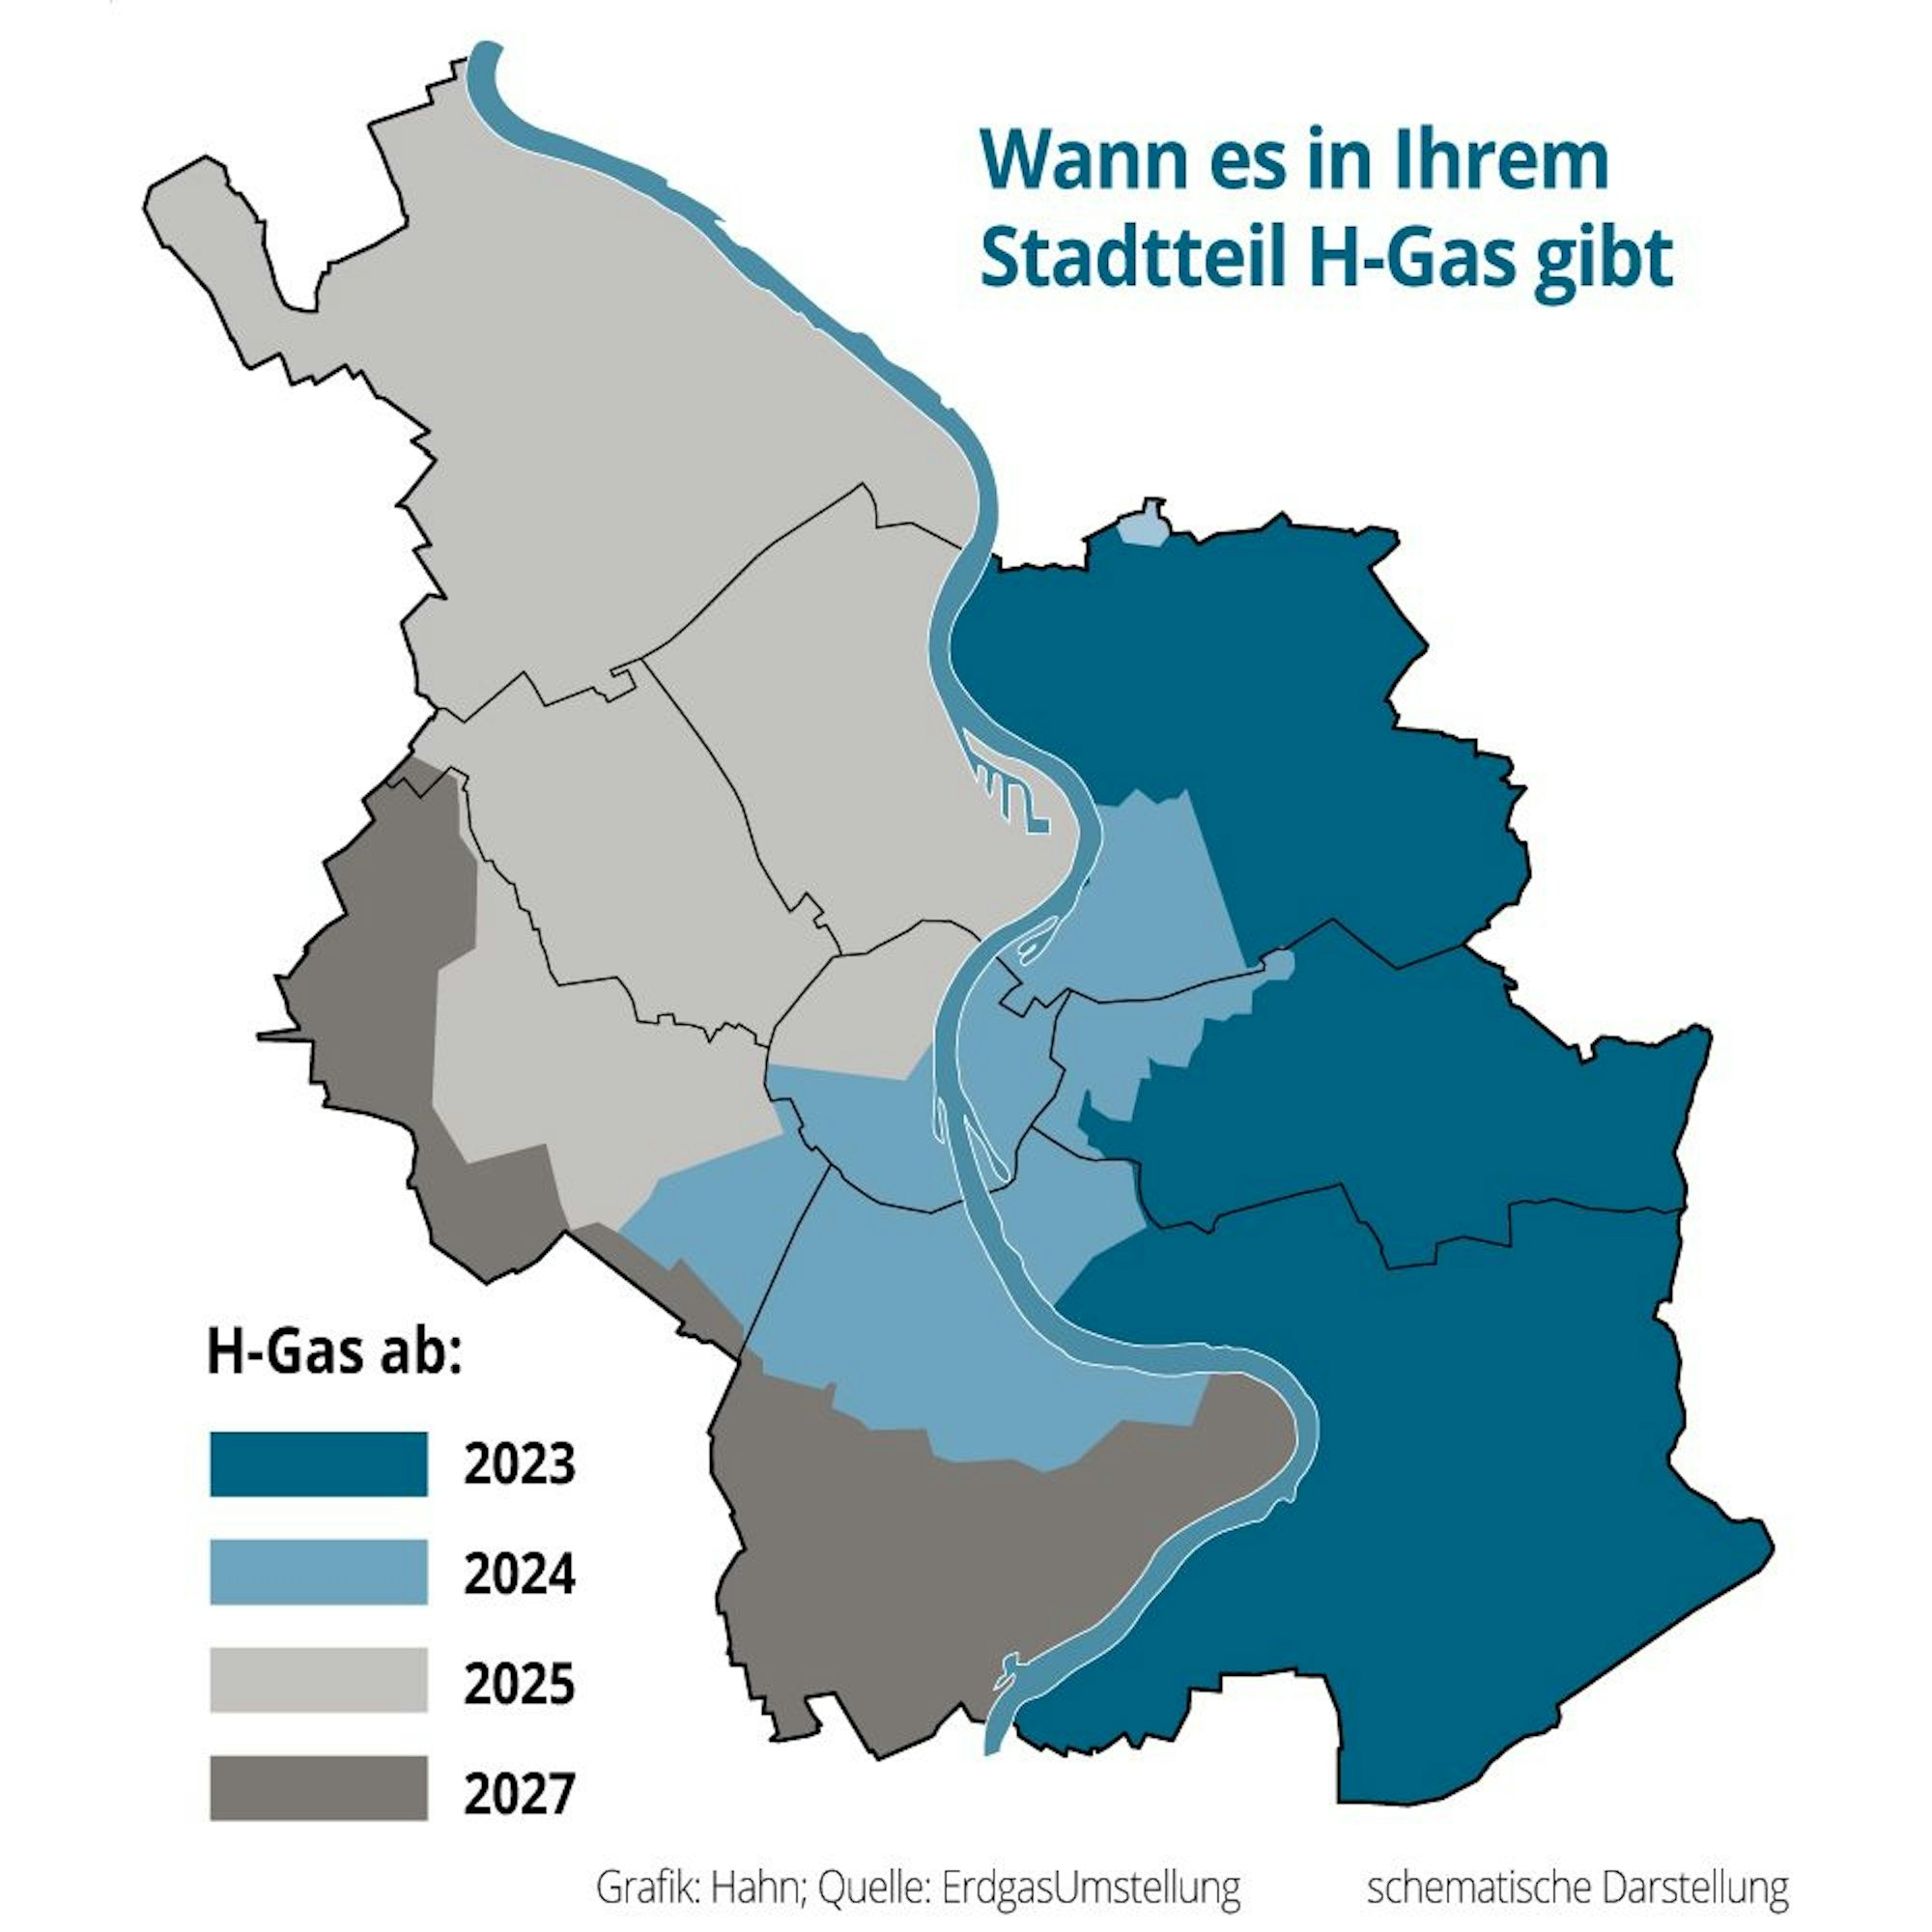 Eine Grafik zeigt, wann es in welchen Stadtteilen Köln H-Gas gibt. Der Osten ist großteils dunkelblau eingefärbt, was H-Gas ab 2023 bedeutet. Die Mitte ist hellblau, das heißt H-Gas ab 2024. Der Norden ist hellgrau, was H-Gas ab 2025 bedeutet. Dunkelgrau ist der Süden sowie ein Teil des Westens, dort gibt es H-Gas ab 2027.